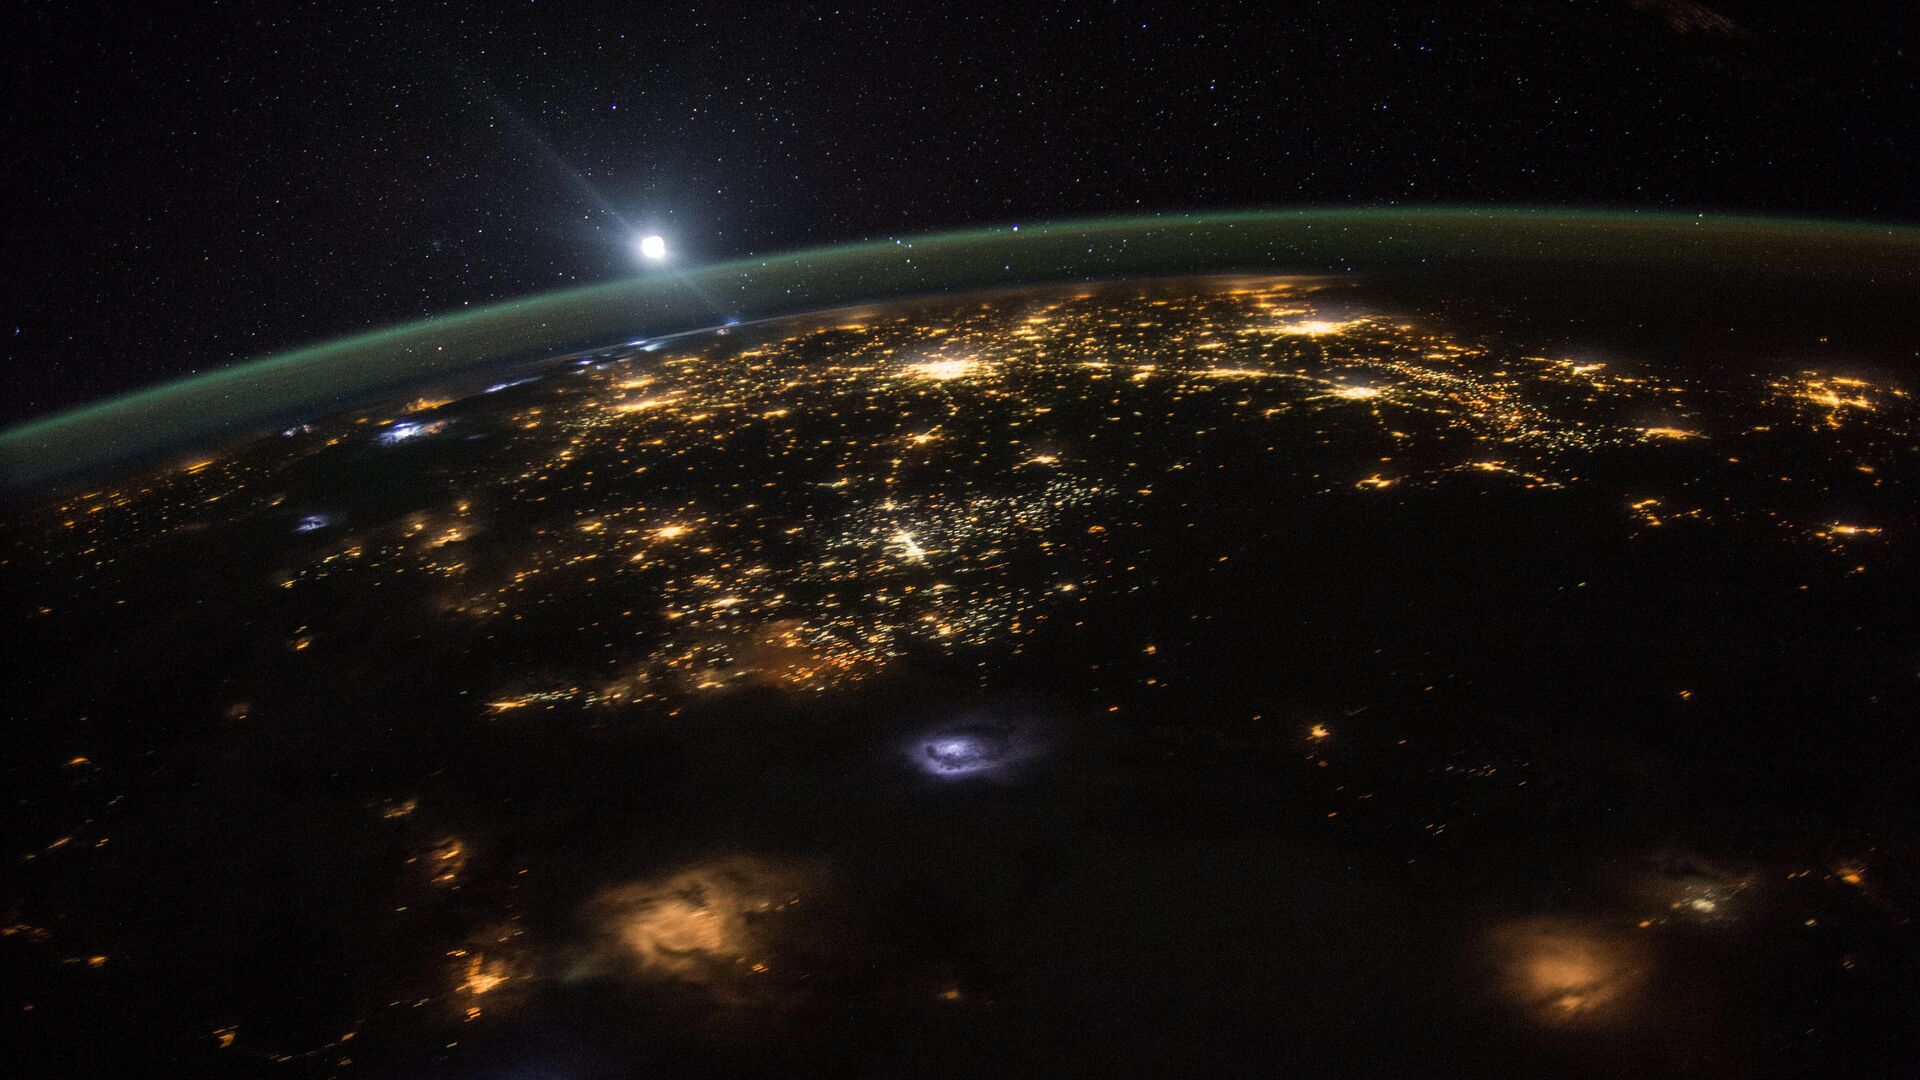 Ночная Земля: вид на восход солнца над поверхностью планеты из космоса с международной космической станции, на высоте более 350 км над поверхностью Земли - Sputnik Грузия, 1920, 28.12.2021